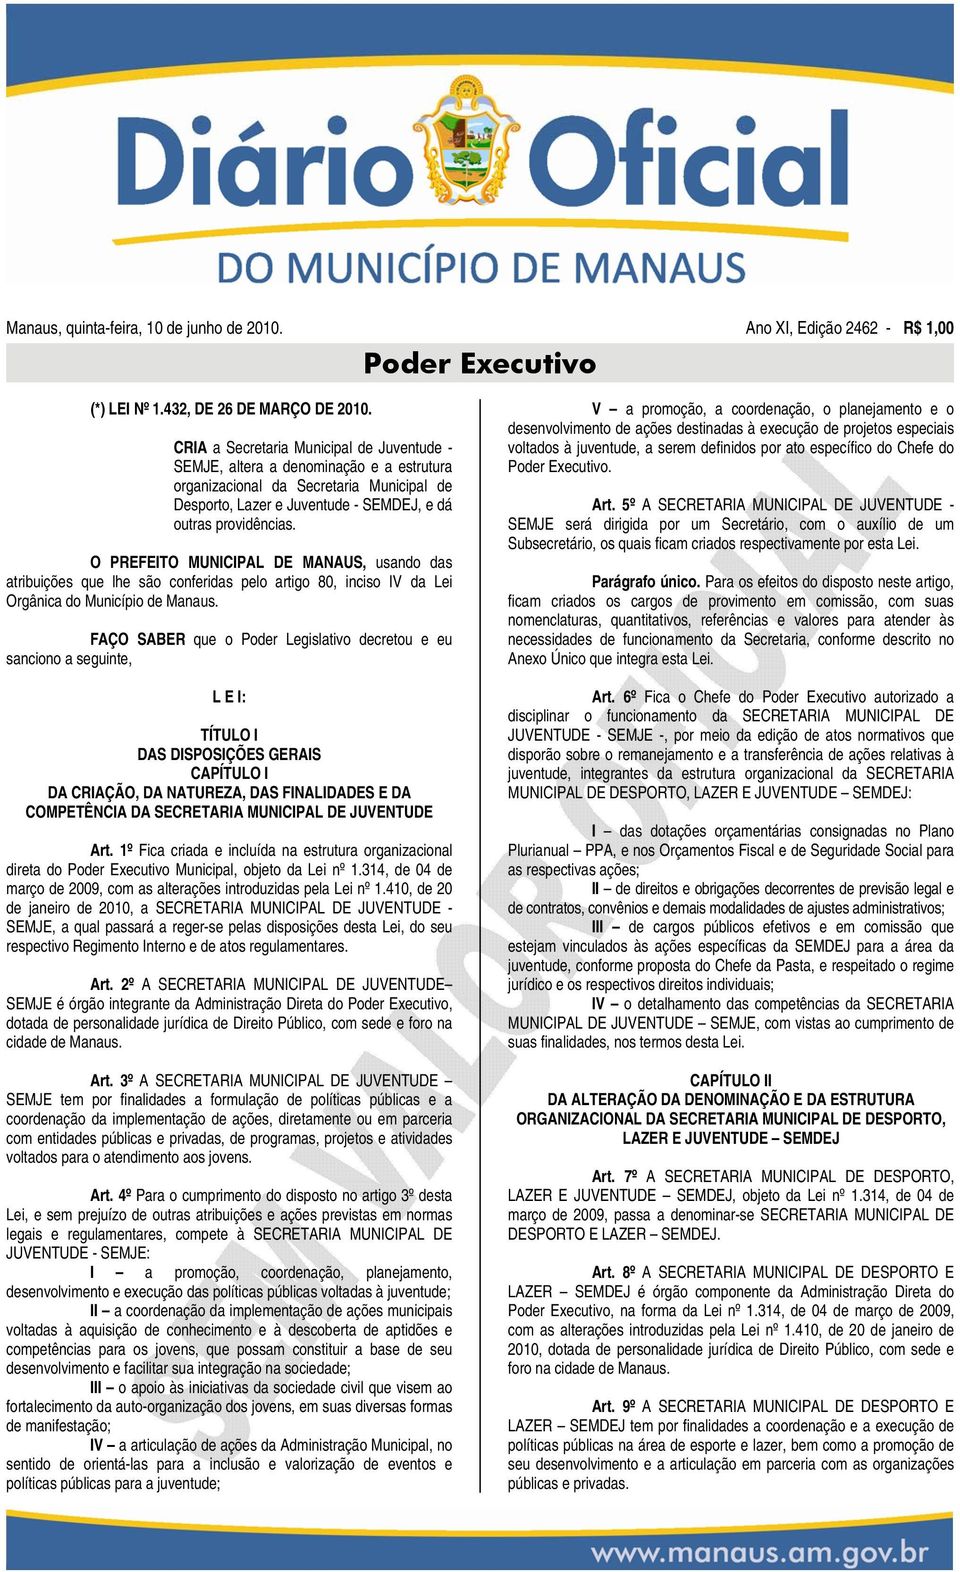 O PREFEITO MUNICIPAL DE MANAUS, usando das atribuições que lhe são conferidas pelo artigo 80, inciso IV da Lei Orgânica do Município de Manaus.